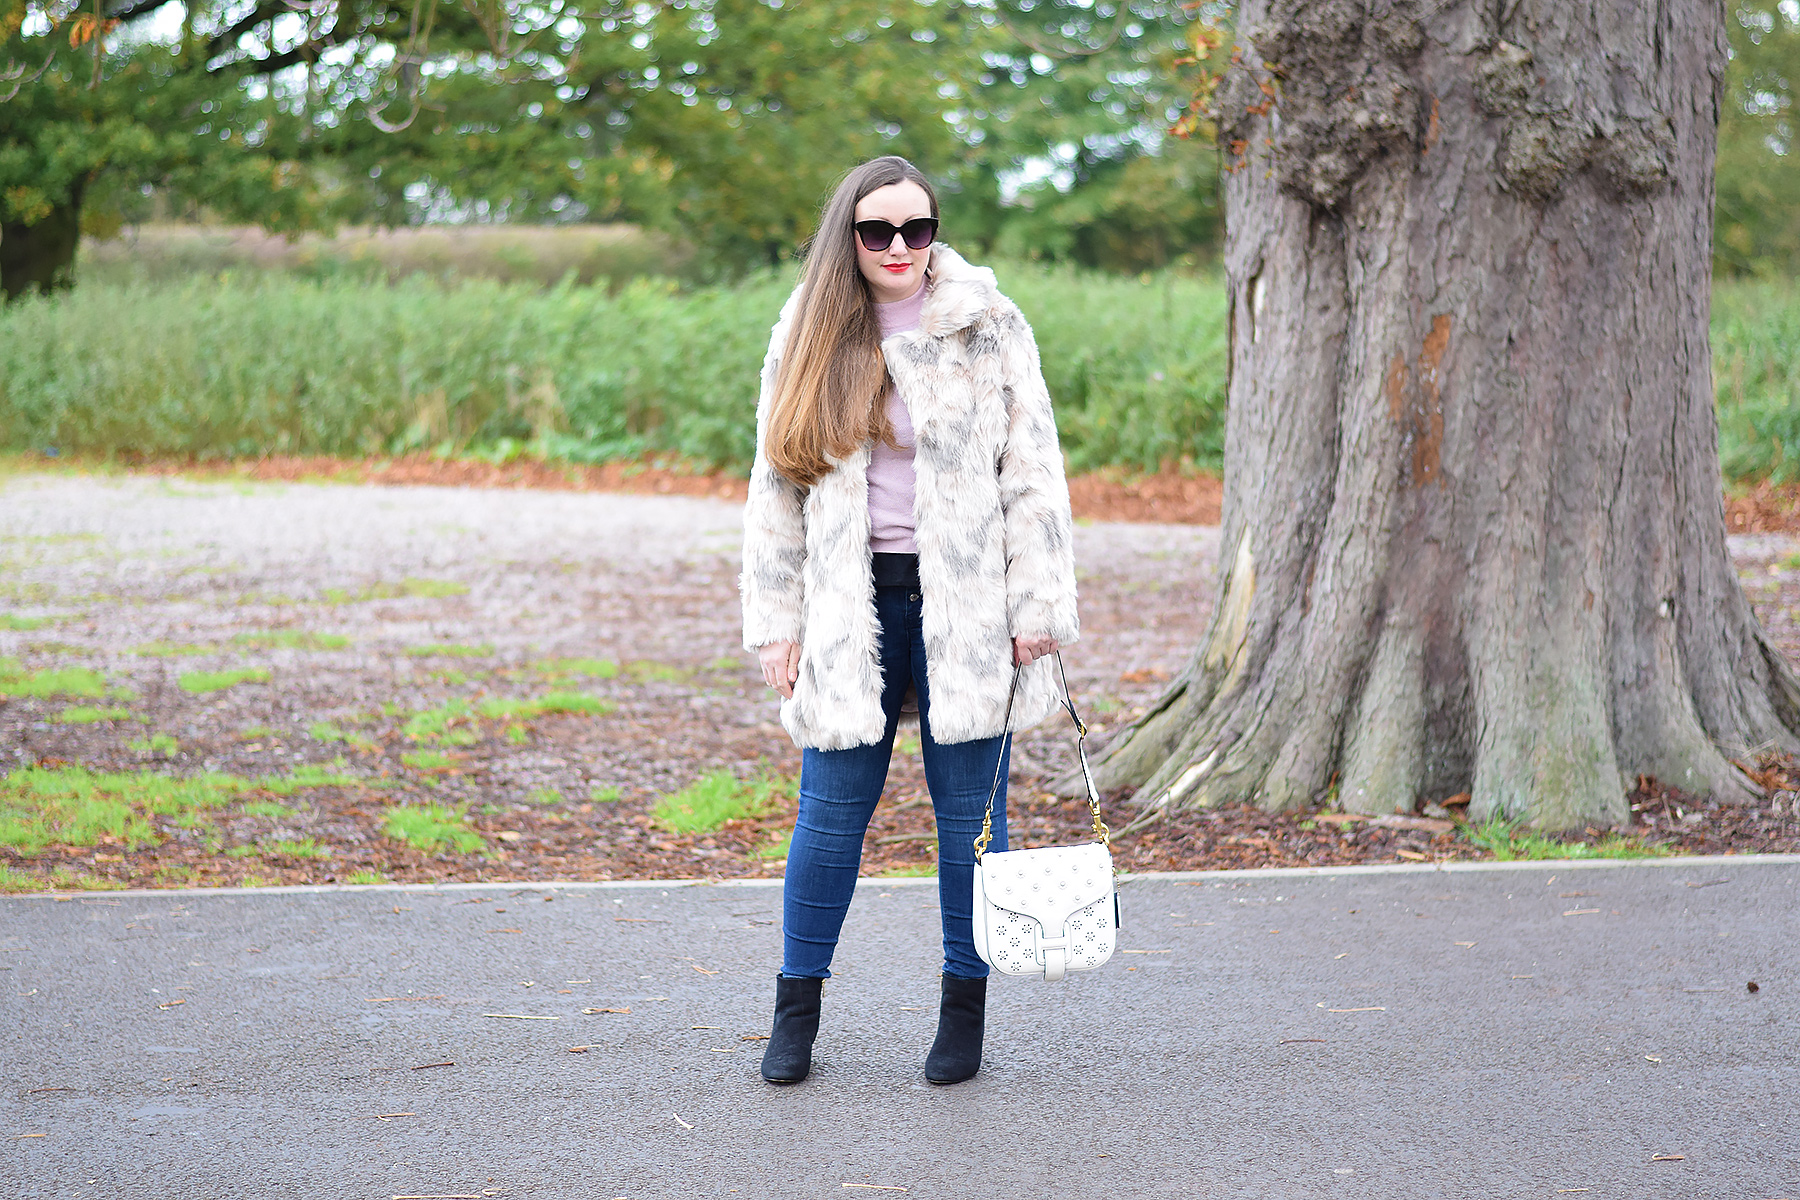 UK Fashion blogger - casual style